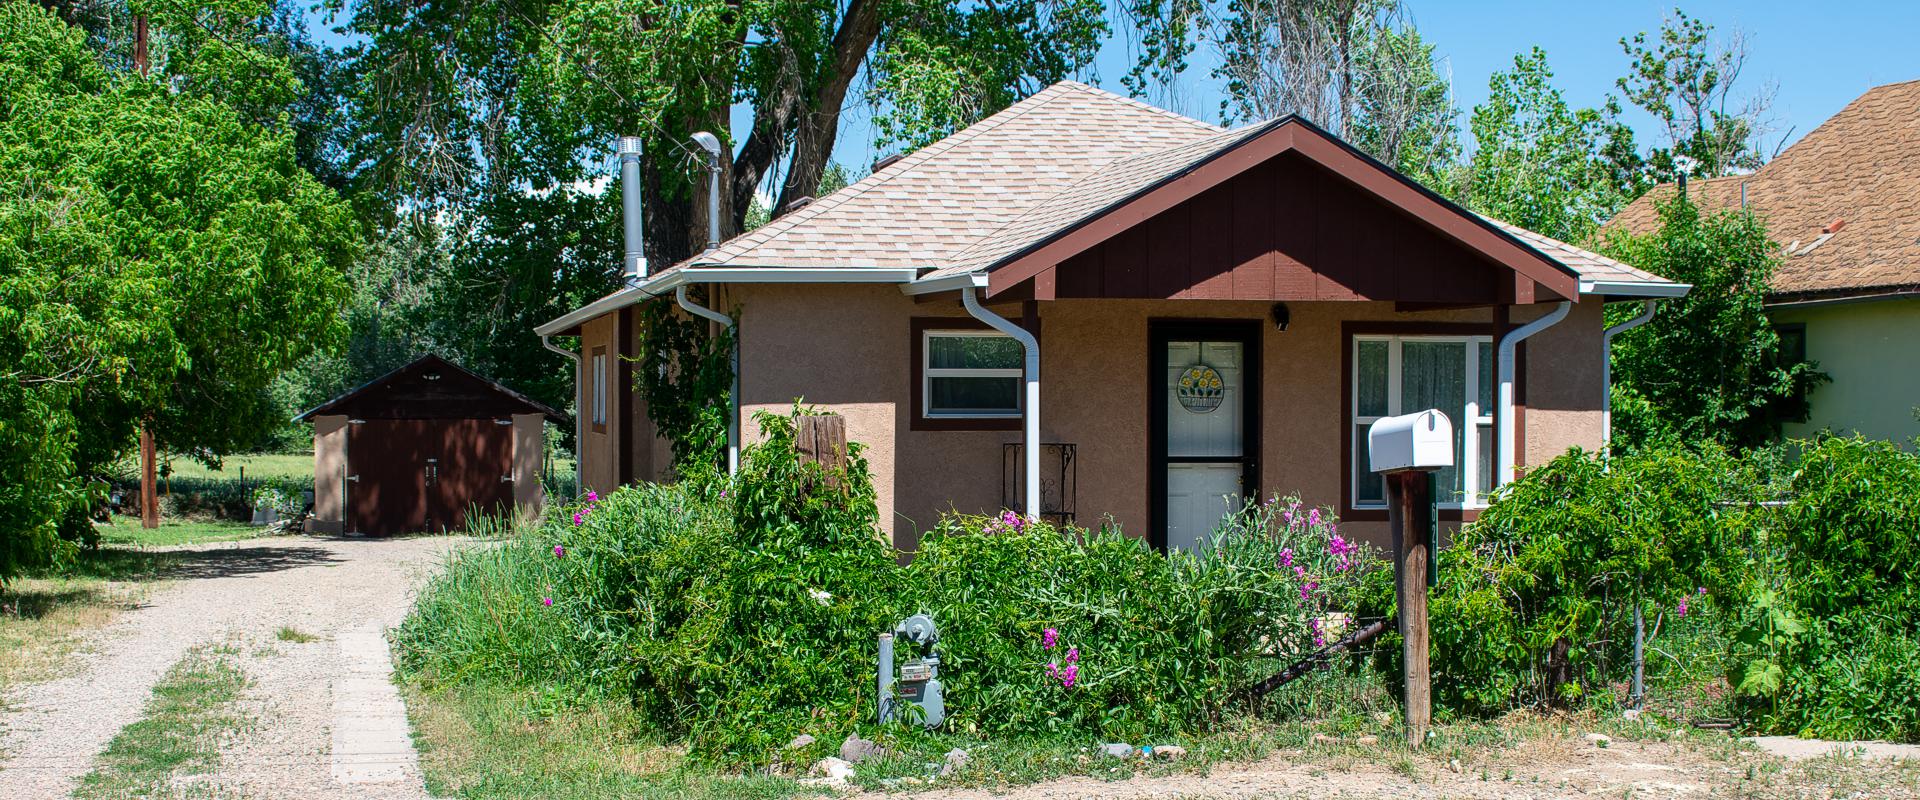 Properties for Sale in Rye, Pueblo, Beulah, Pueblo and Southern Colorado